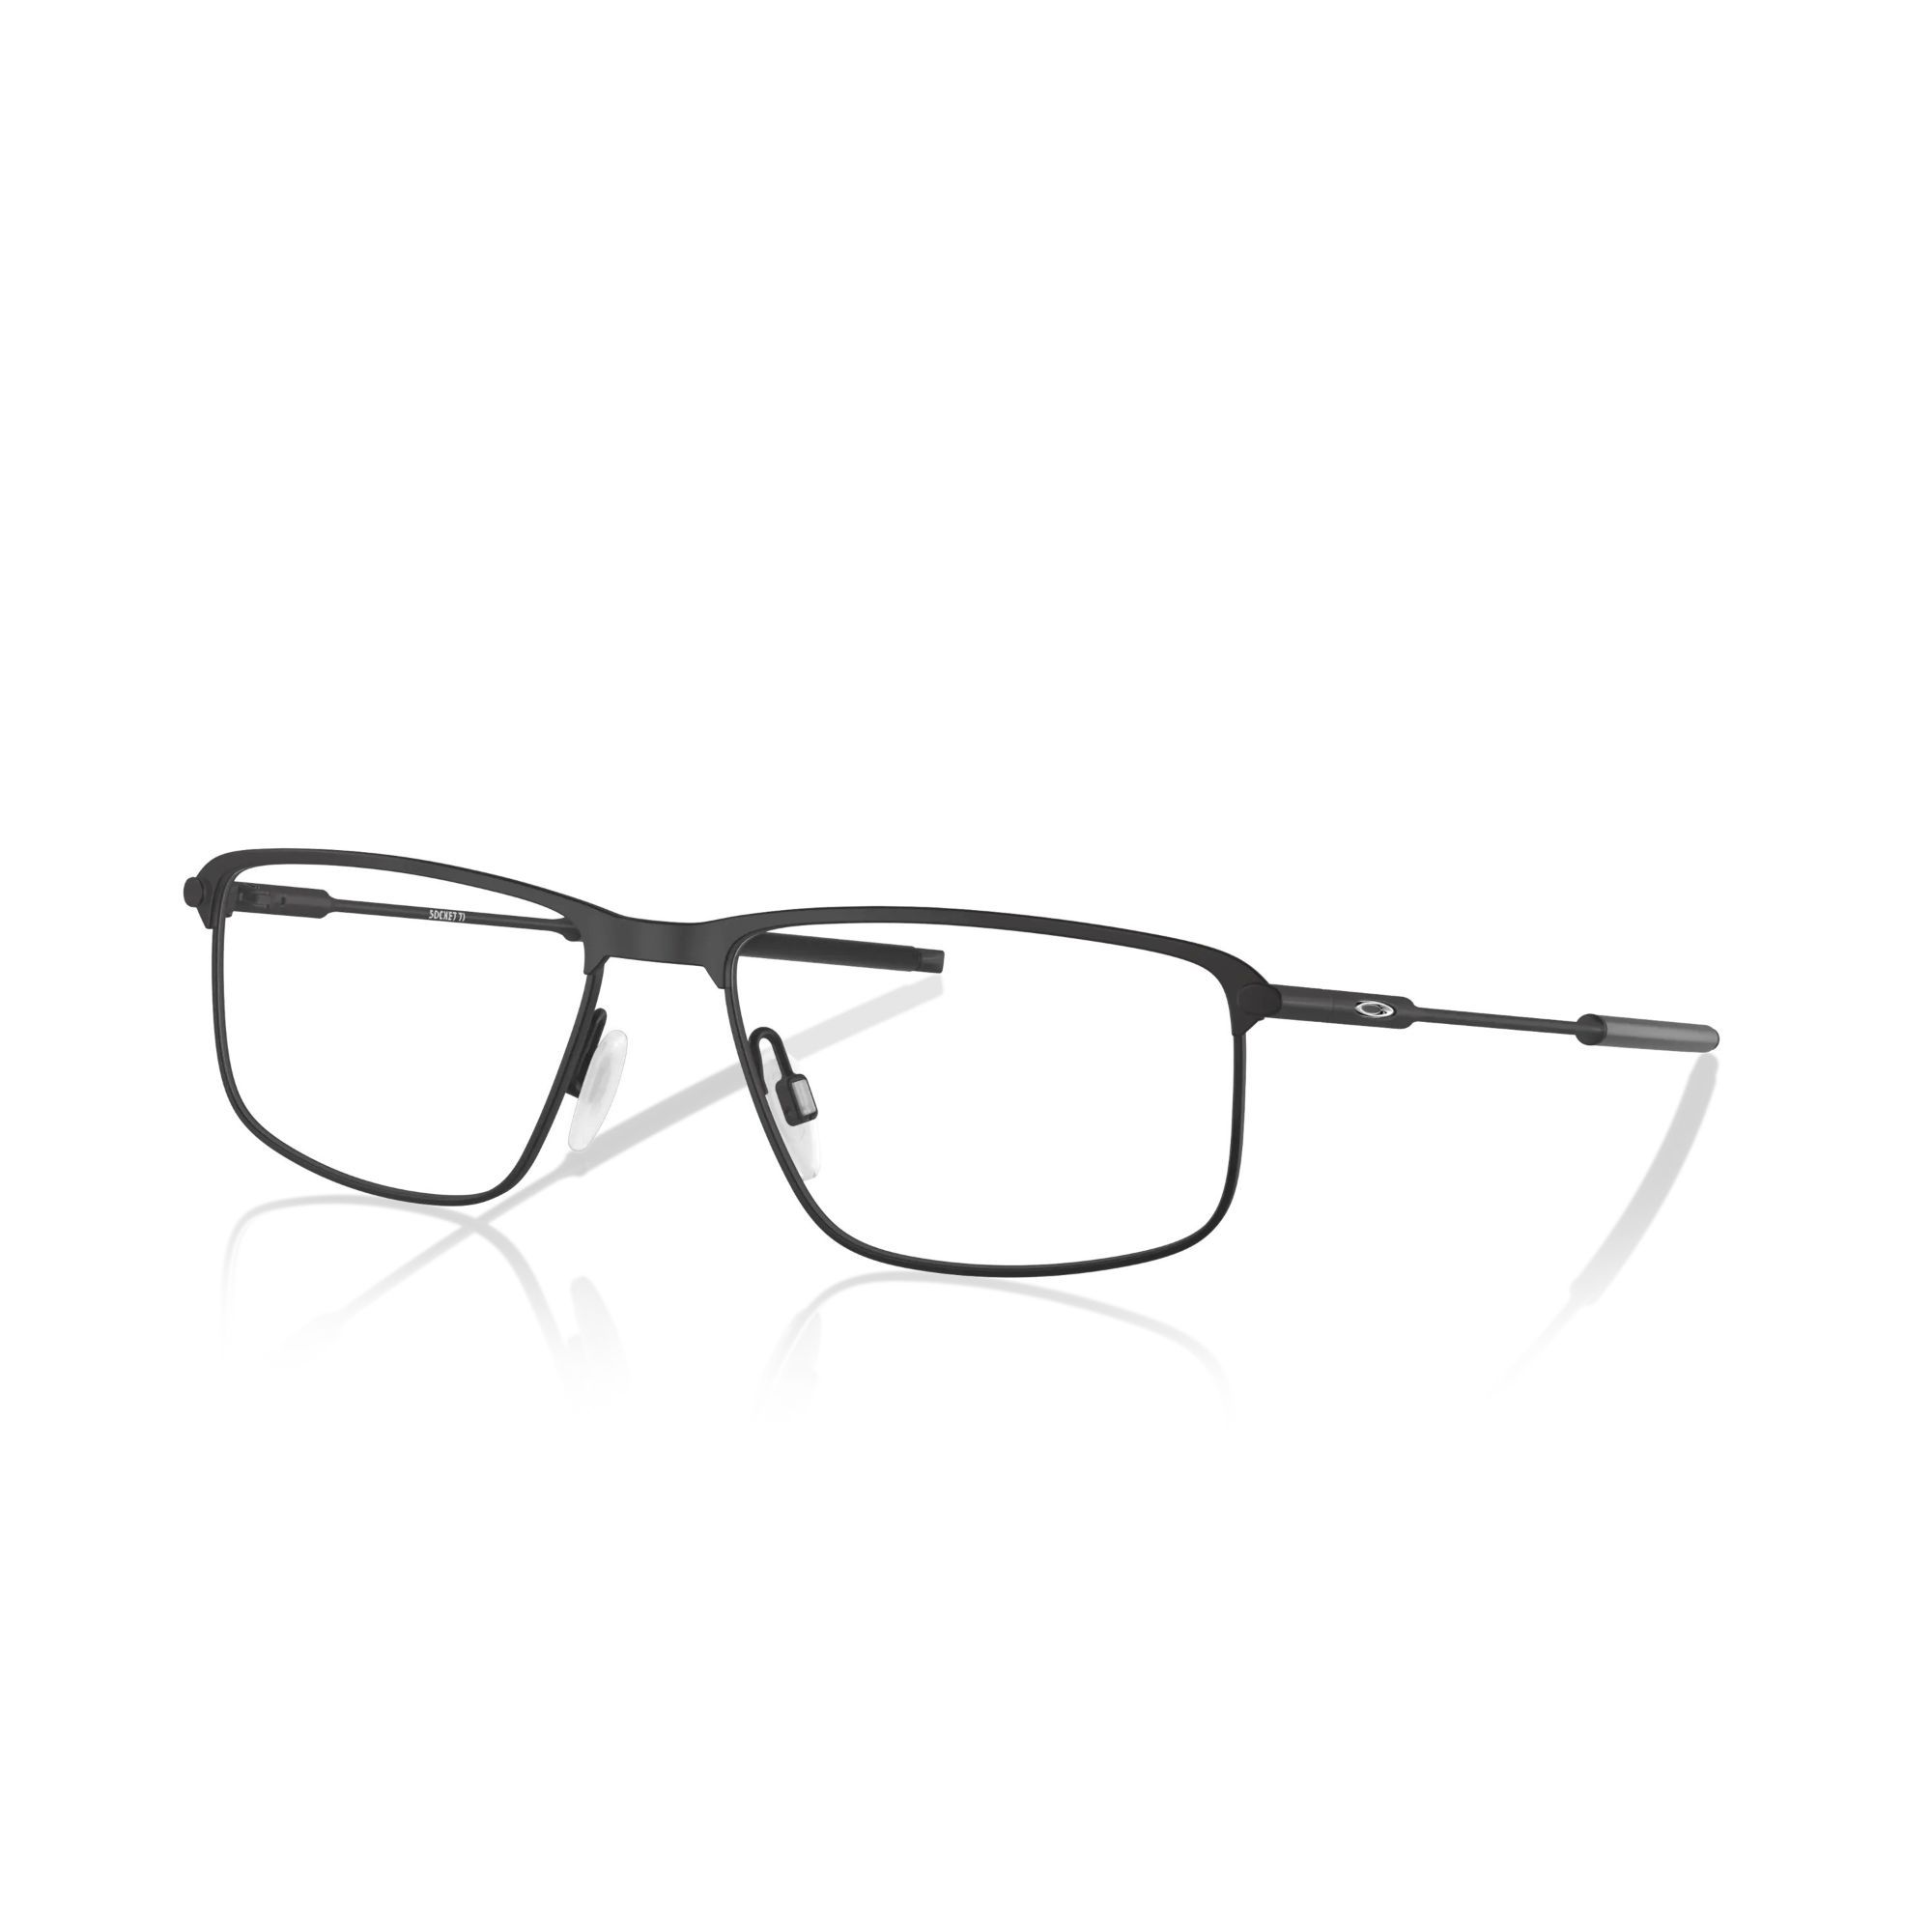 0OX5019 Rectangle Eyeglasses 501901 - size 56